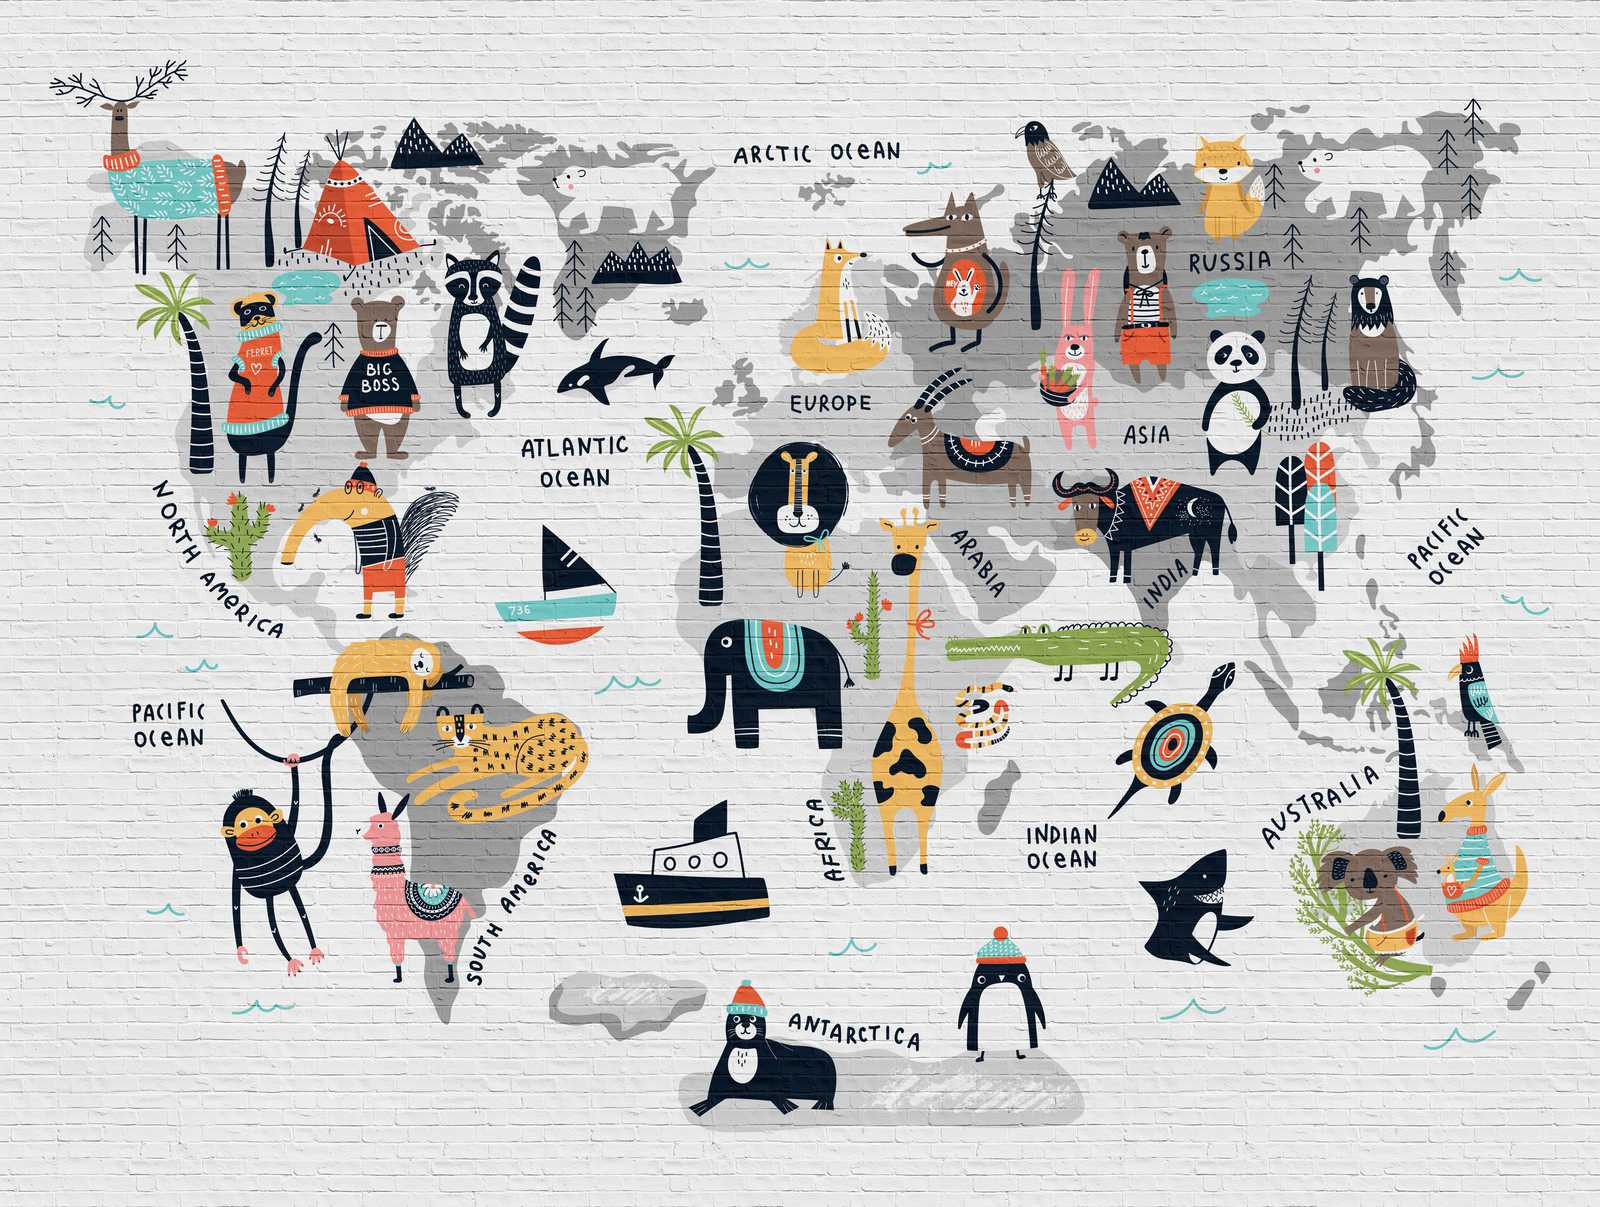             Nouveauté papier peint | Papier peint chambre d'enfant Carte du monde avec motifs d'animaux
        